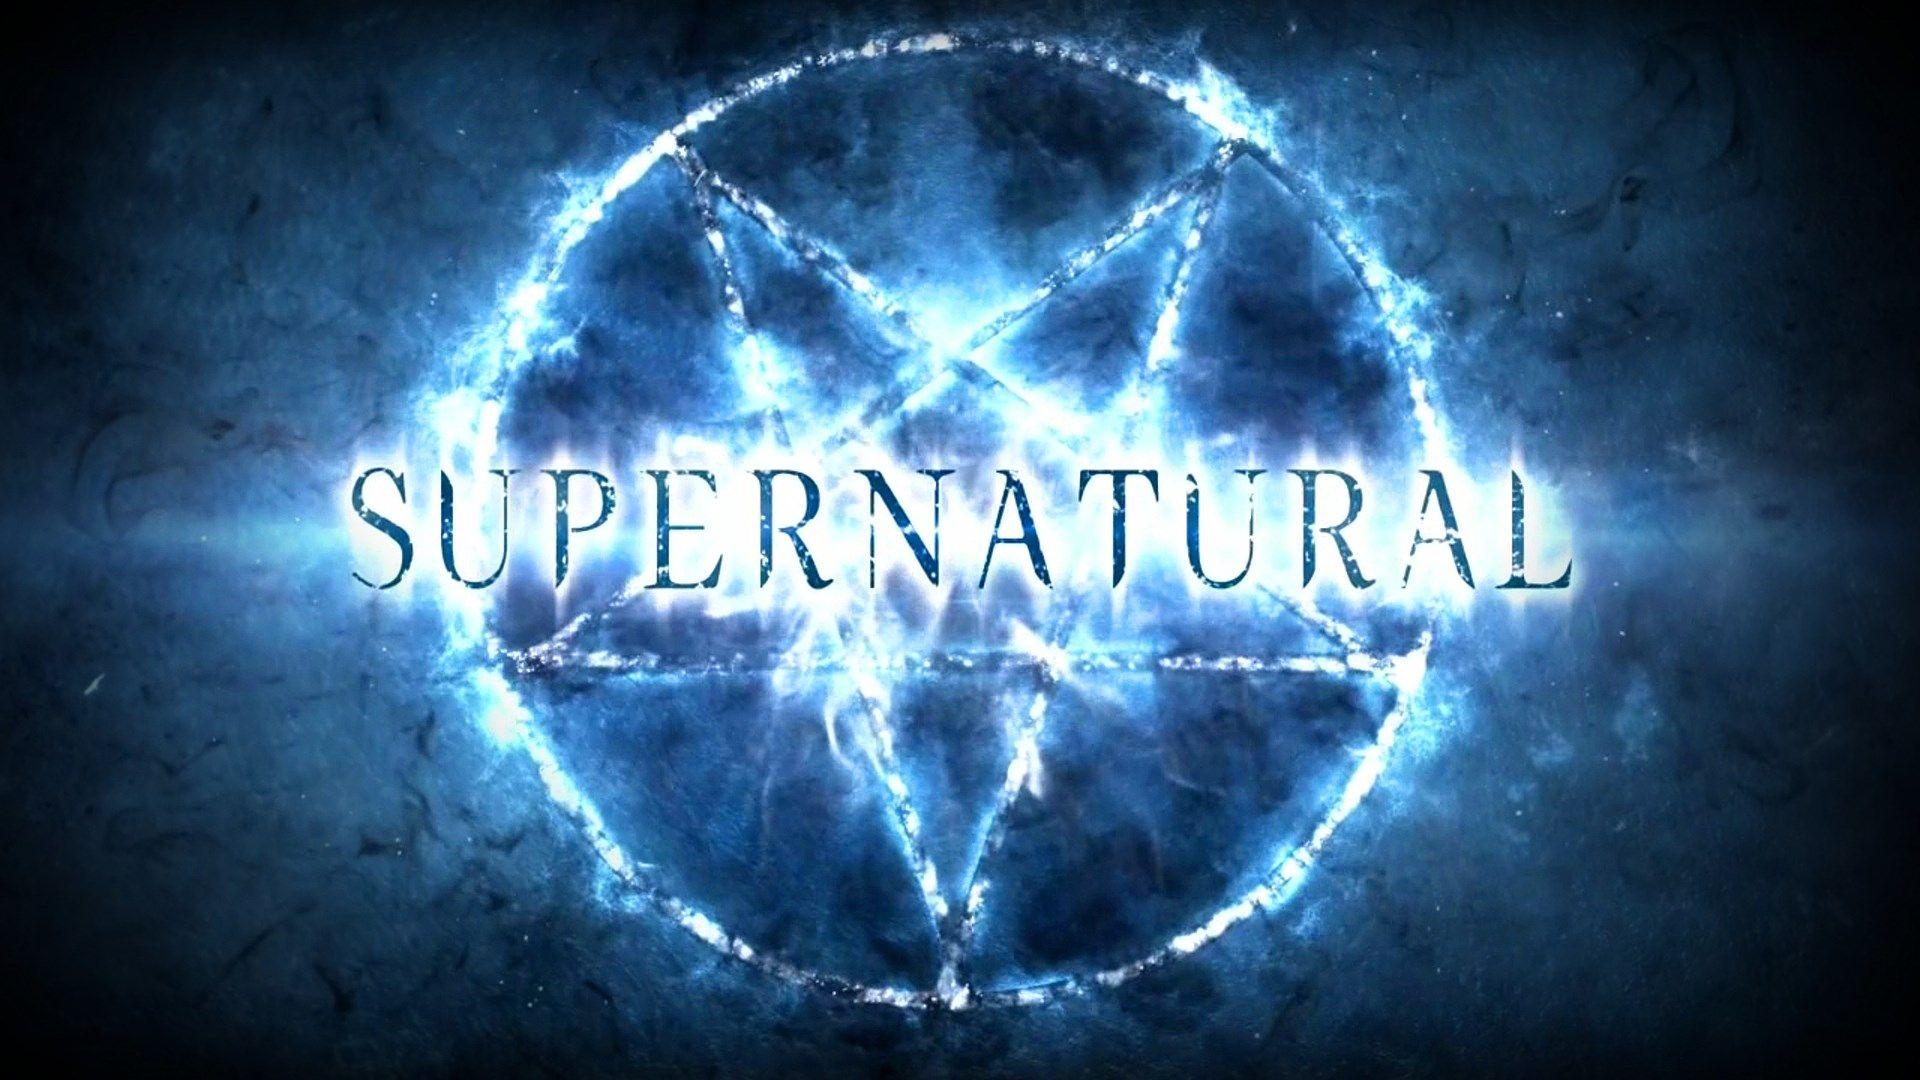 supernatural logo season wallpaper download. マンチェスターu, マンチェスター